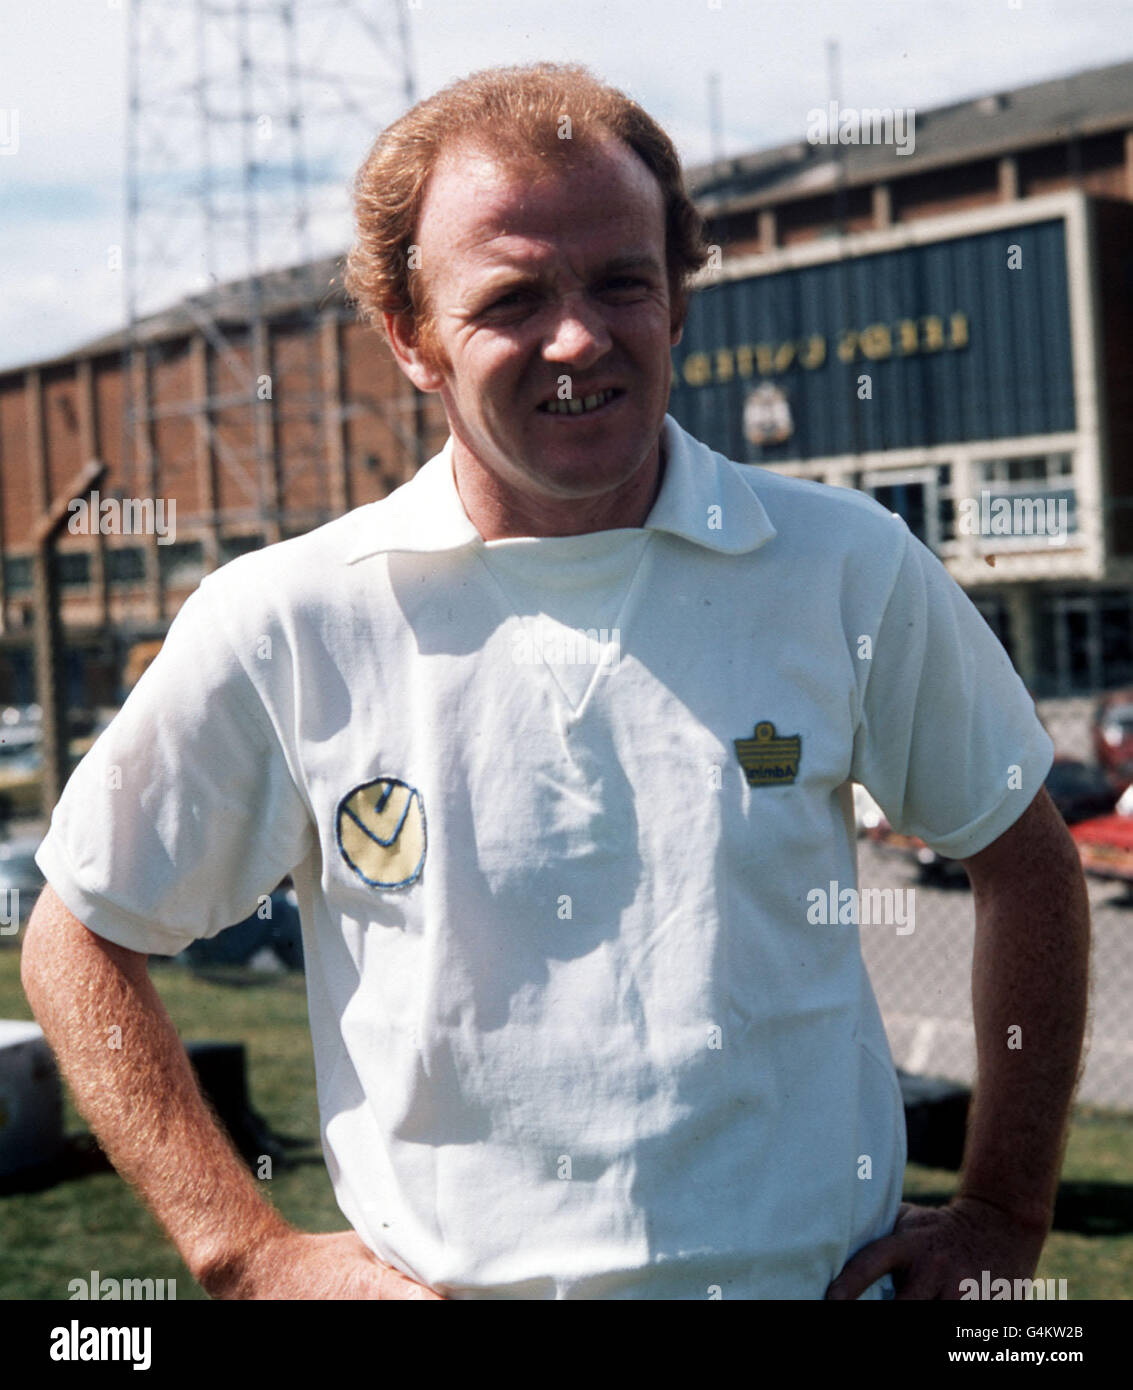 Billy Bremner/Leeds 1974. Footballer Billy Bremner, captain of Leeds United 1974. Stock Photo